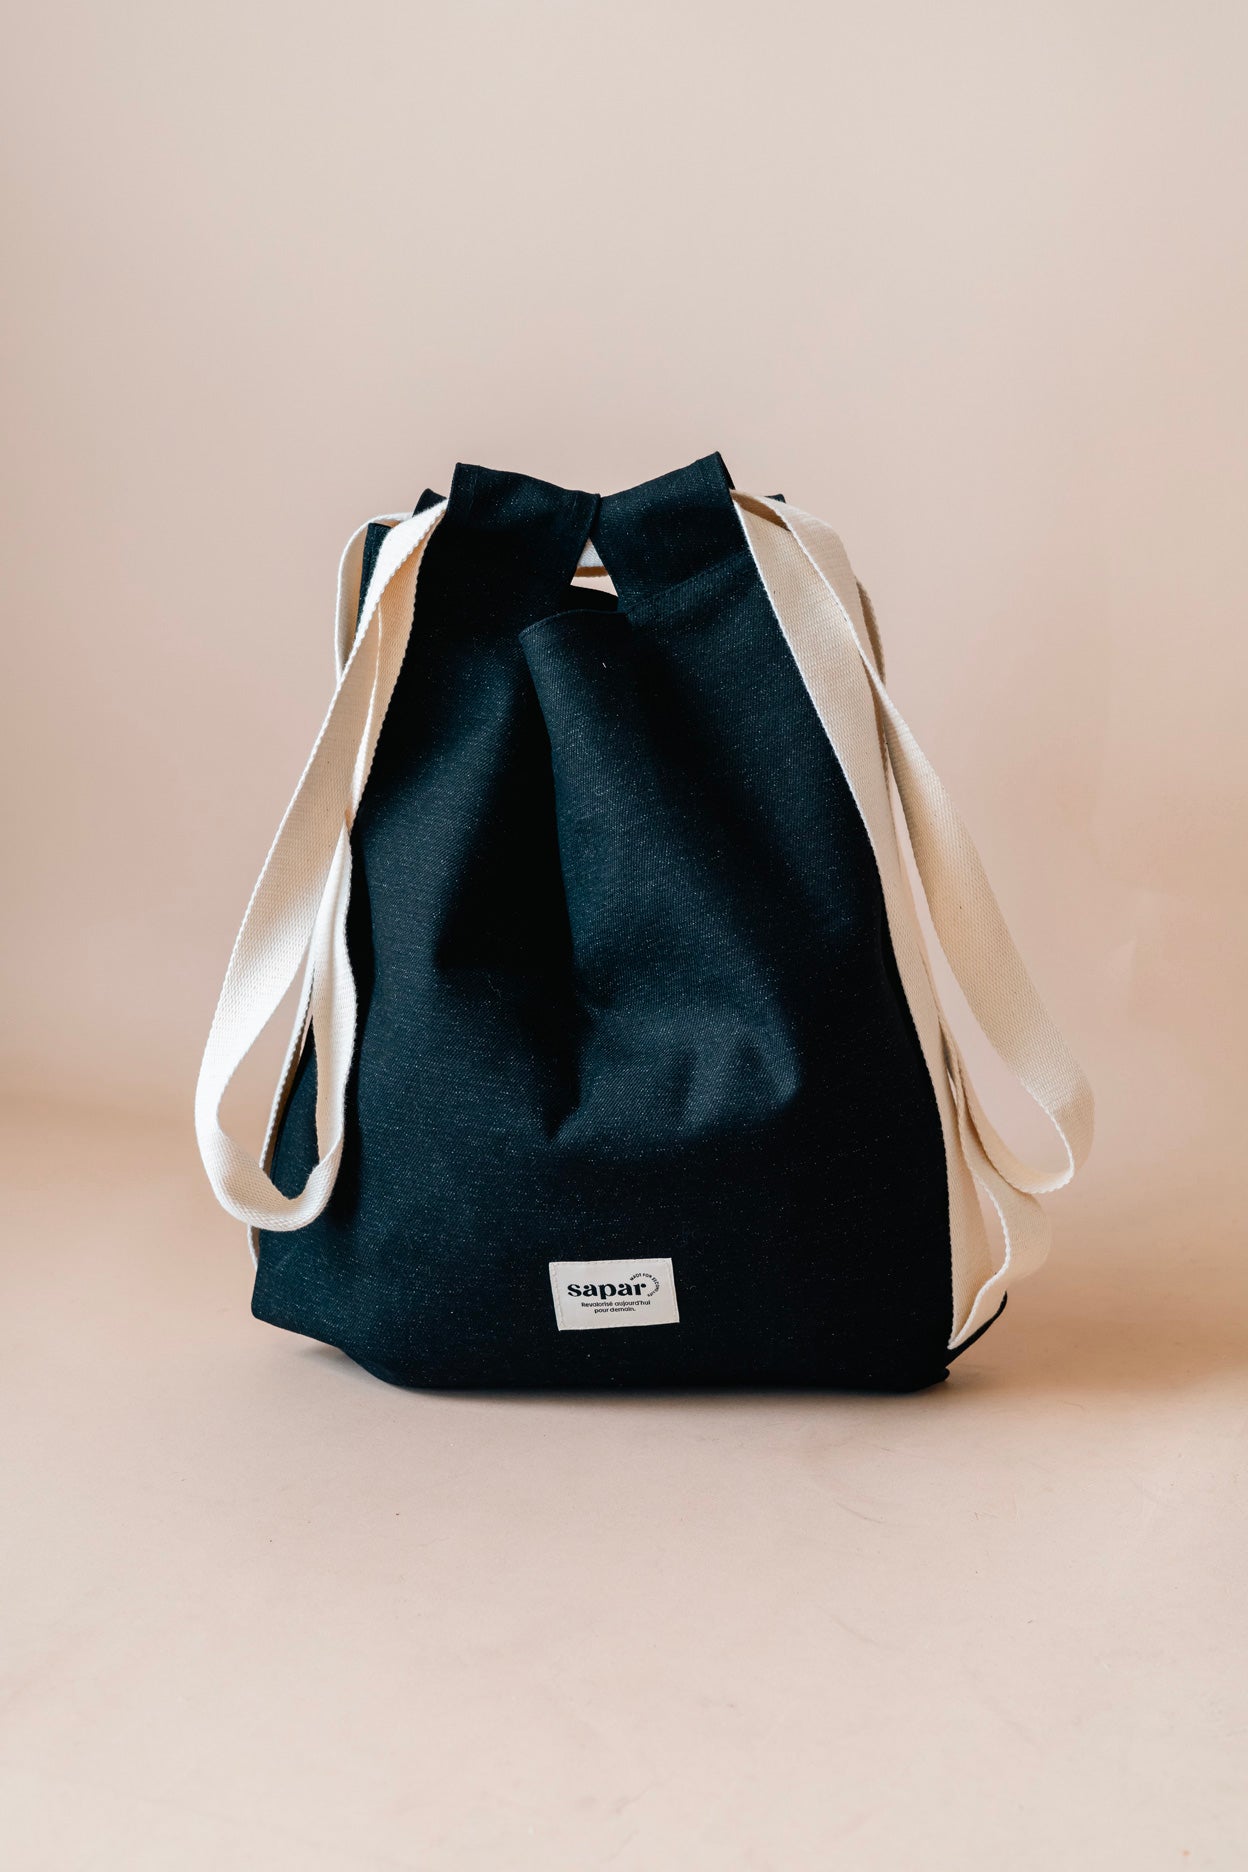 Tote-Bag upcyclé et personnalisable | écoresponsable et durable | Sapar